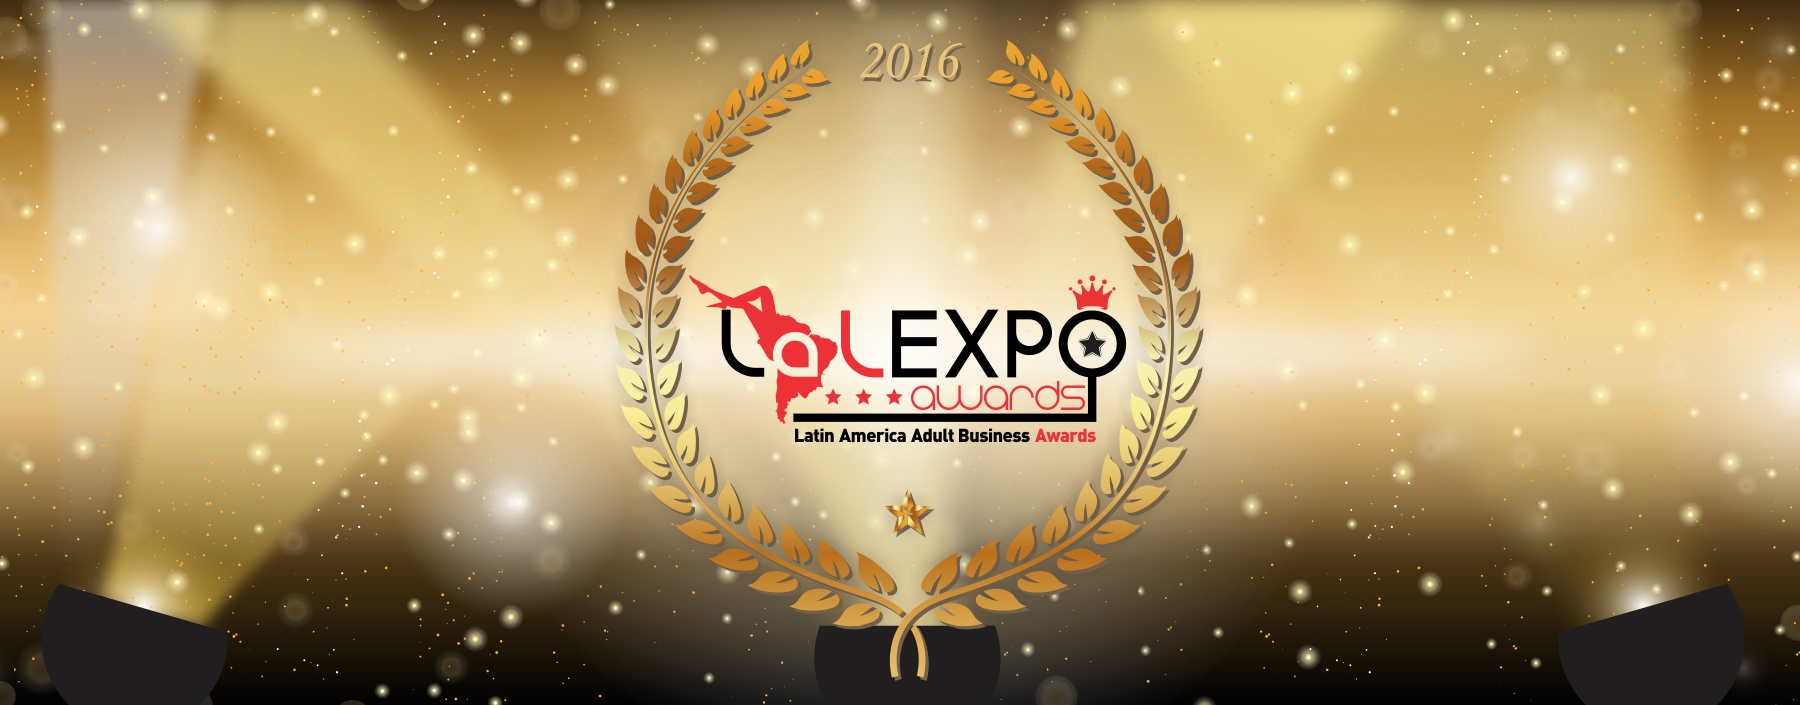 Sostieni il Team CAM4 in nomination per i premi del LalExpo